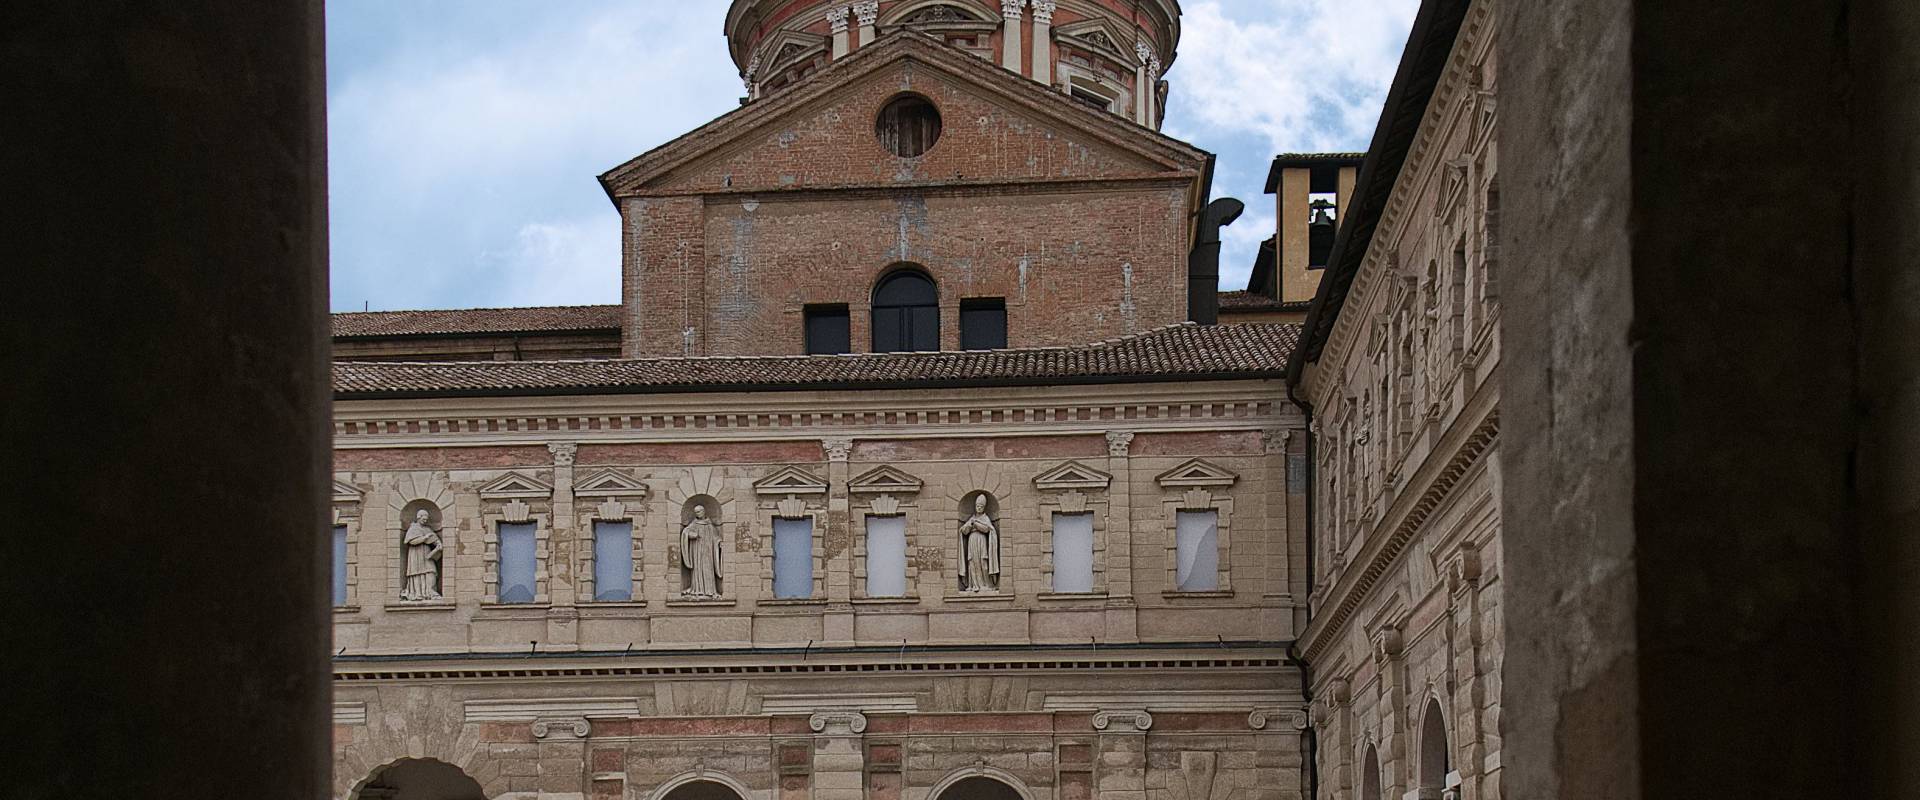 La cupola della chiesa di San Pietro vista dai chiostri photo by Caba2011